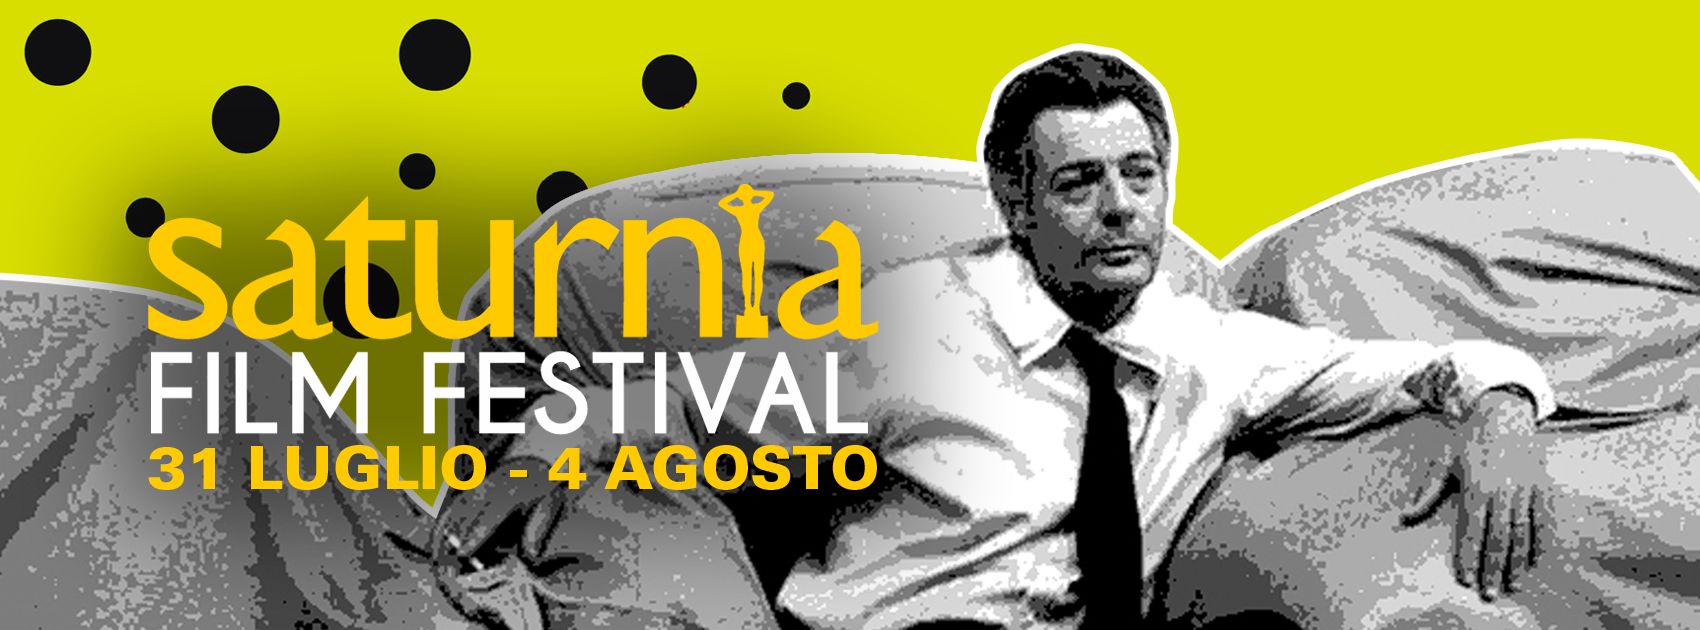 Saturnia Film Festival: annunciati i concorsi e i primi ospiti: Barbara Ronchi, Carlotta Gamba, Piero Messina